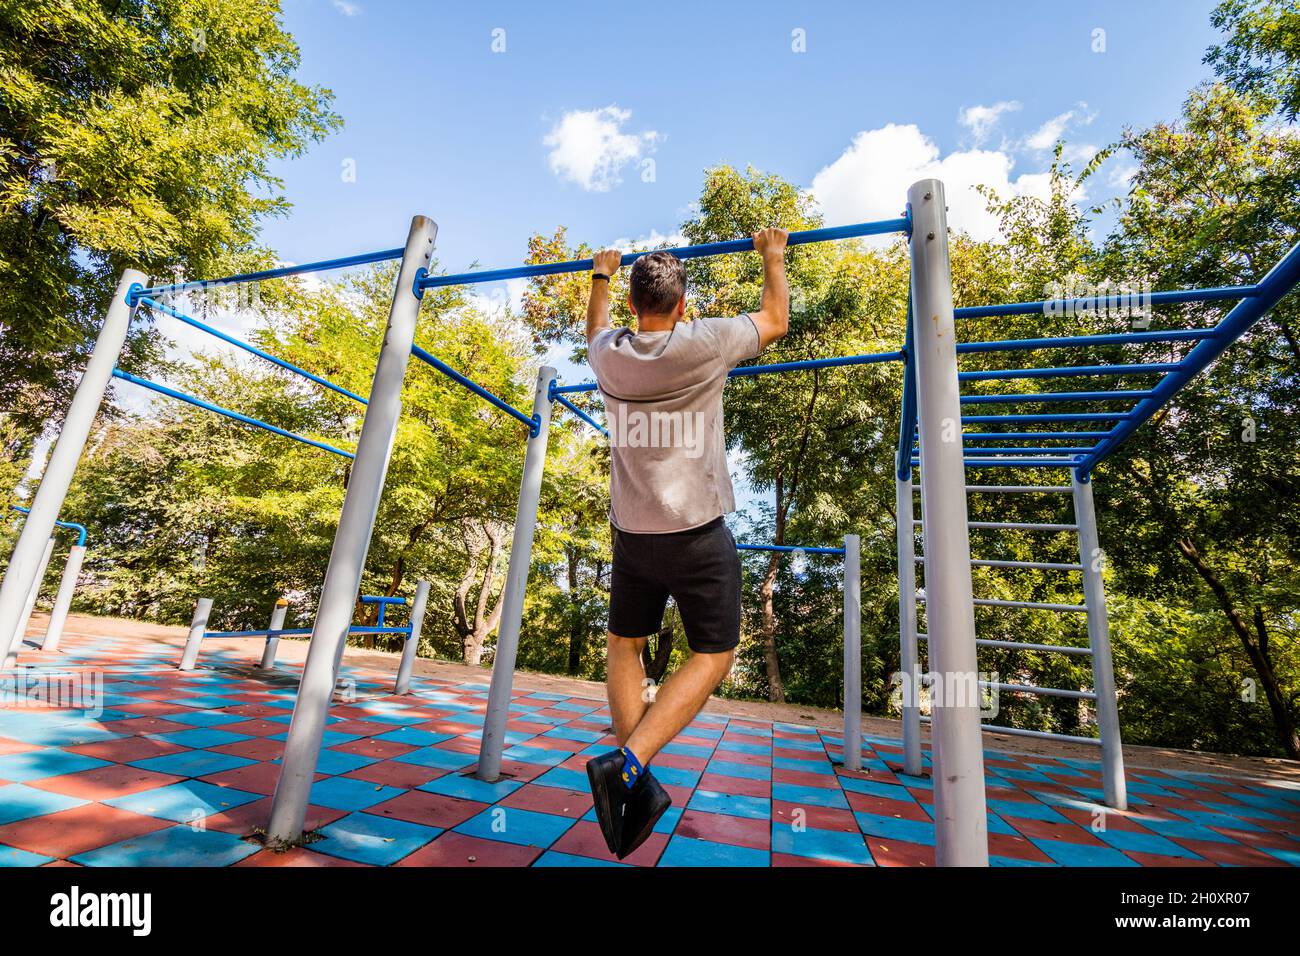 Un homme faisant des exercices sur une barre horizontale dans un parc.Sports de plein air. Banque D'Images